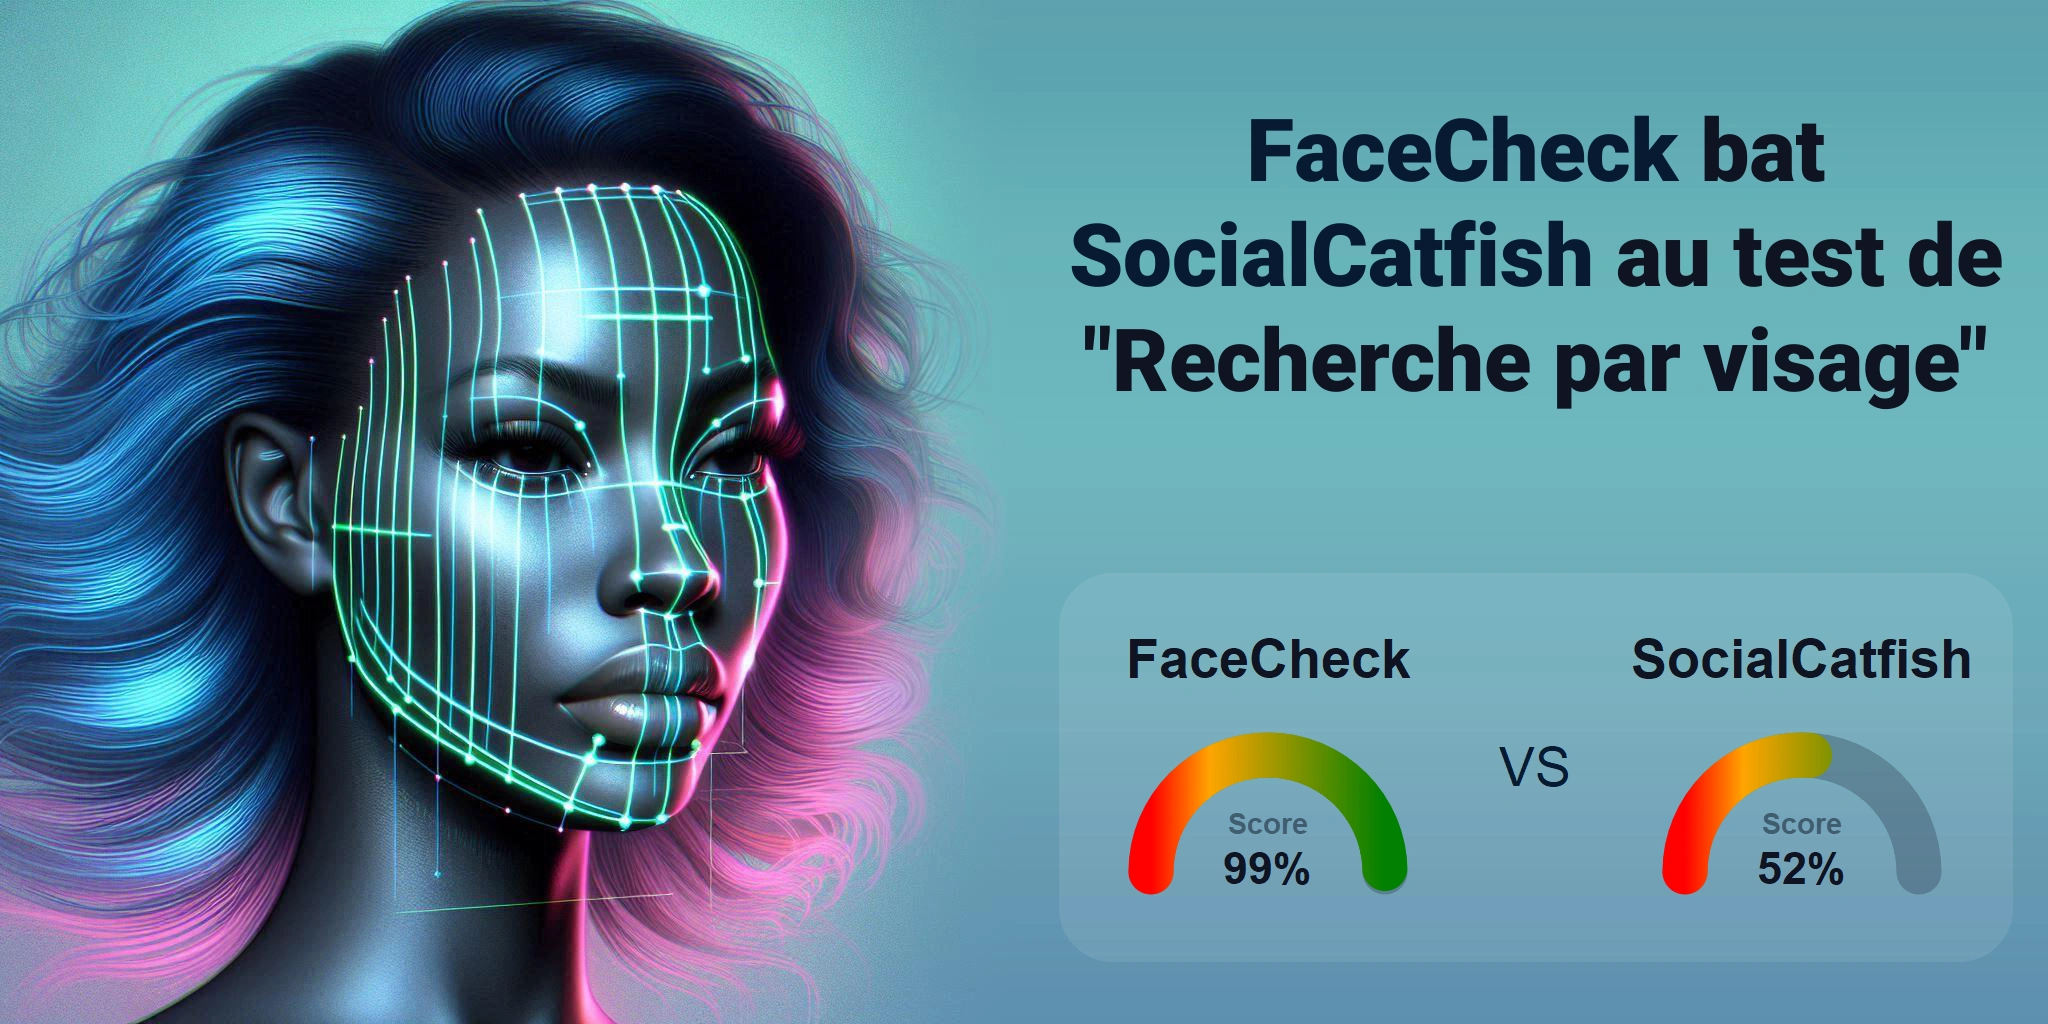 Quel est le meilleur pour la recherche faciale : <br>FaceCheck ou SocialCatfish ?